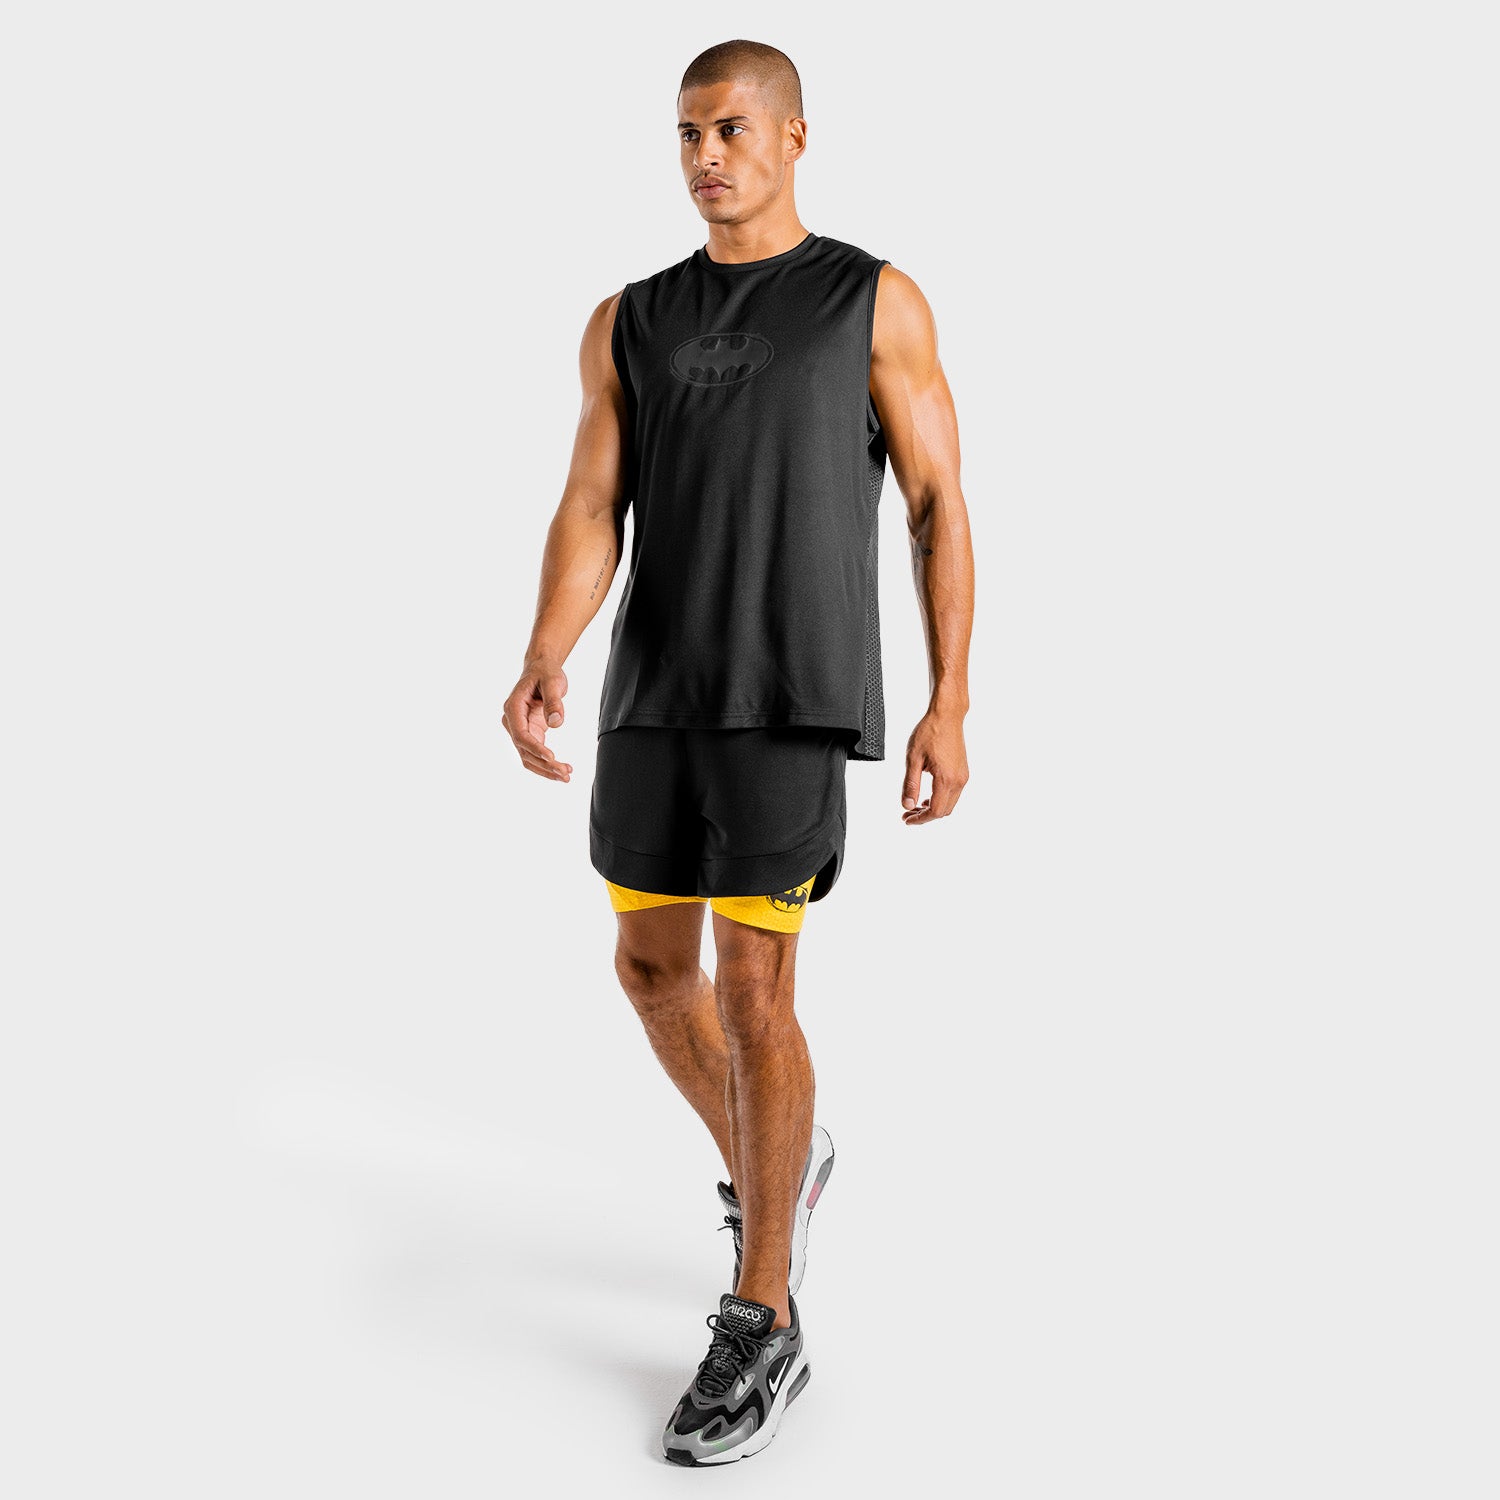 squatwolf-workout-tank-tops-for-men-batman-gym-tank-black-gym-wear